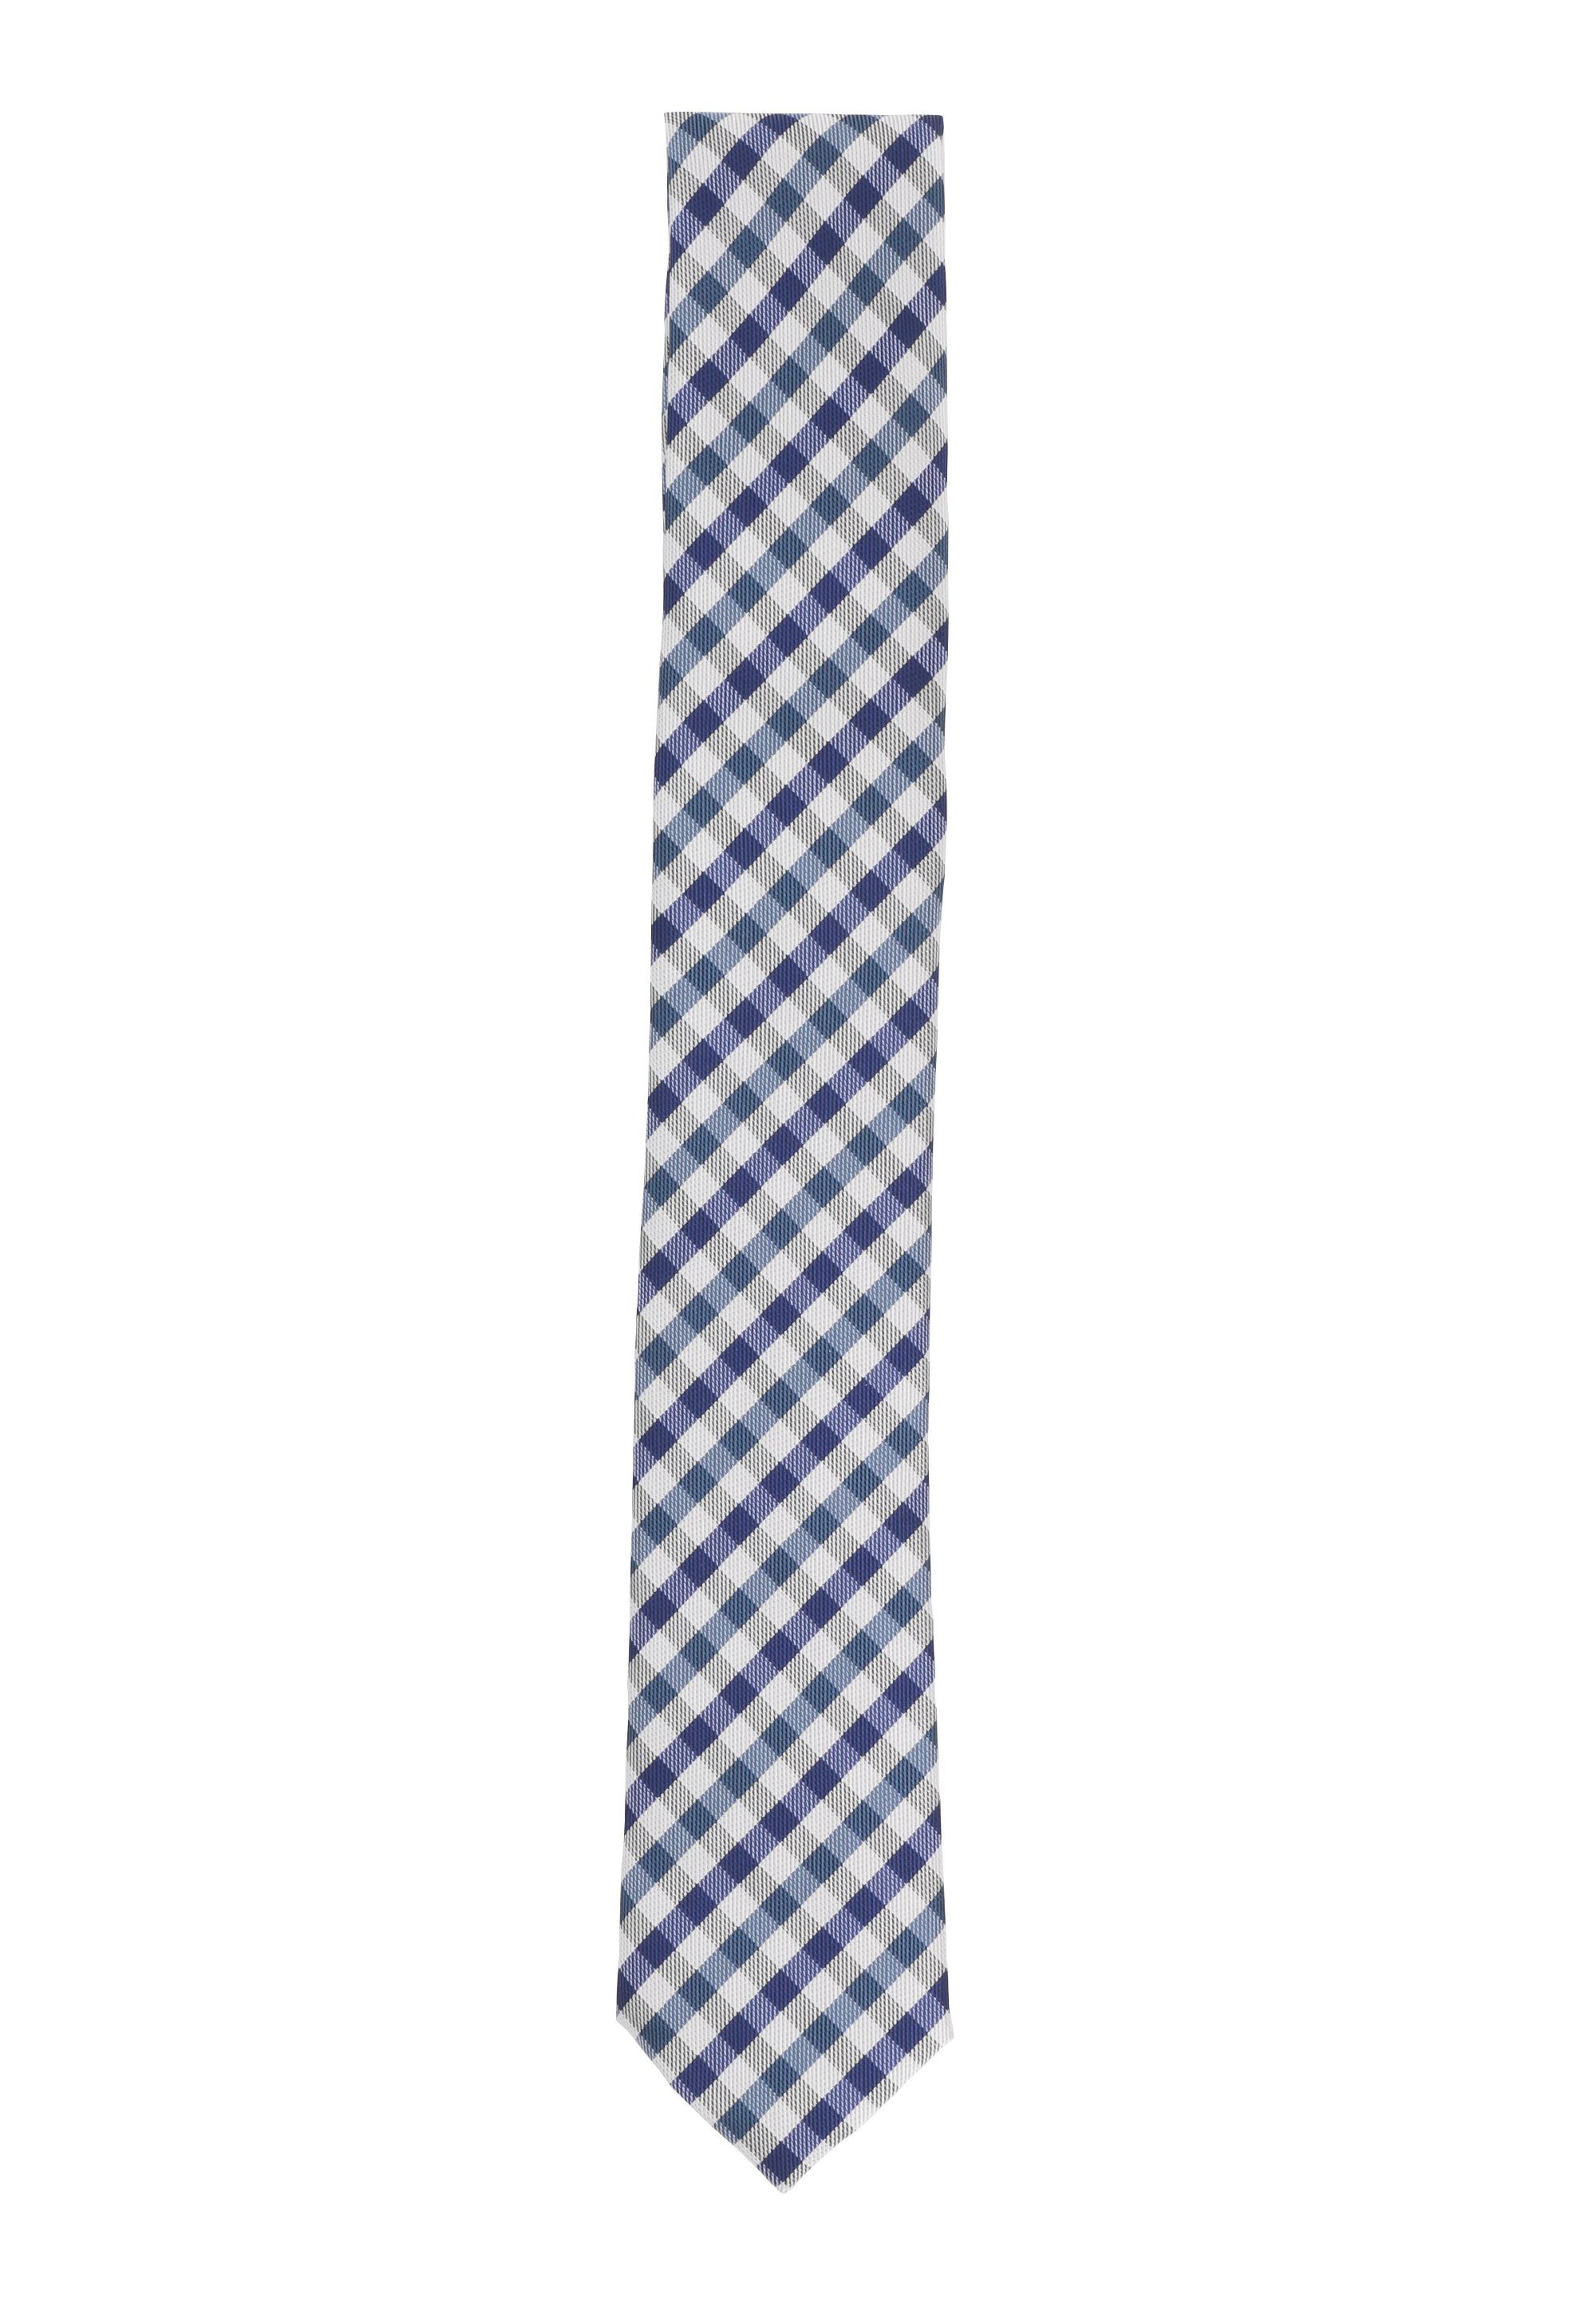 Fabio Farini Krawatte karierte Herren Schlips - Krawatte in 6cm oder 8cm Breite (ohne Box, Kariert) Schmal (6cm), Schwarz/Schneeweiß